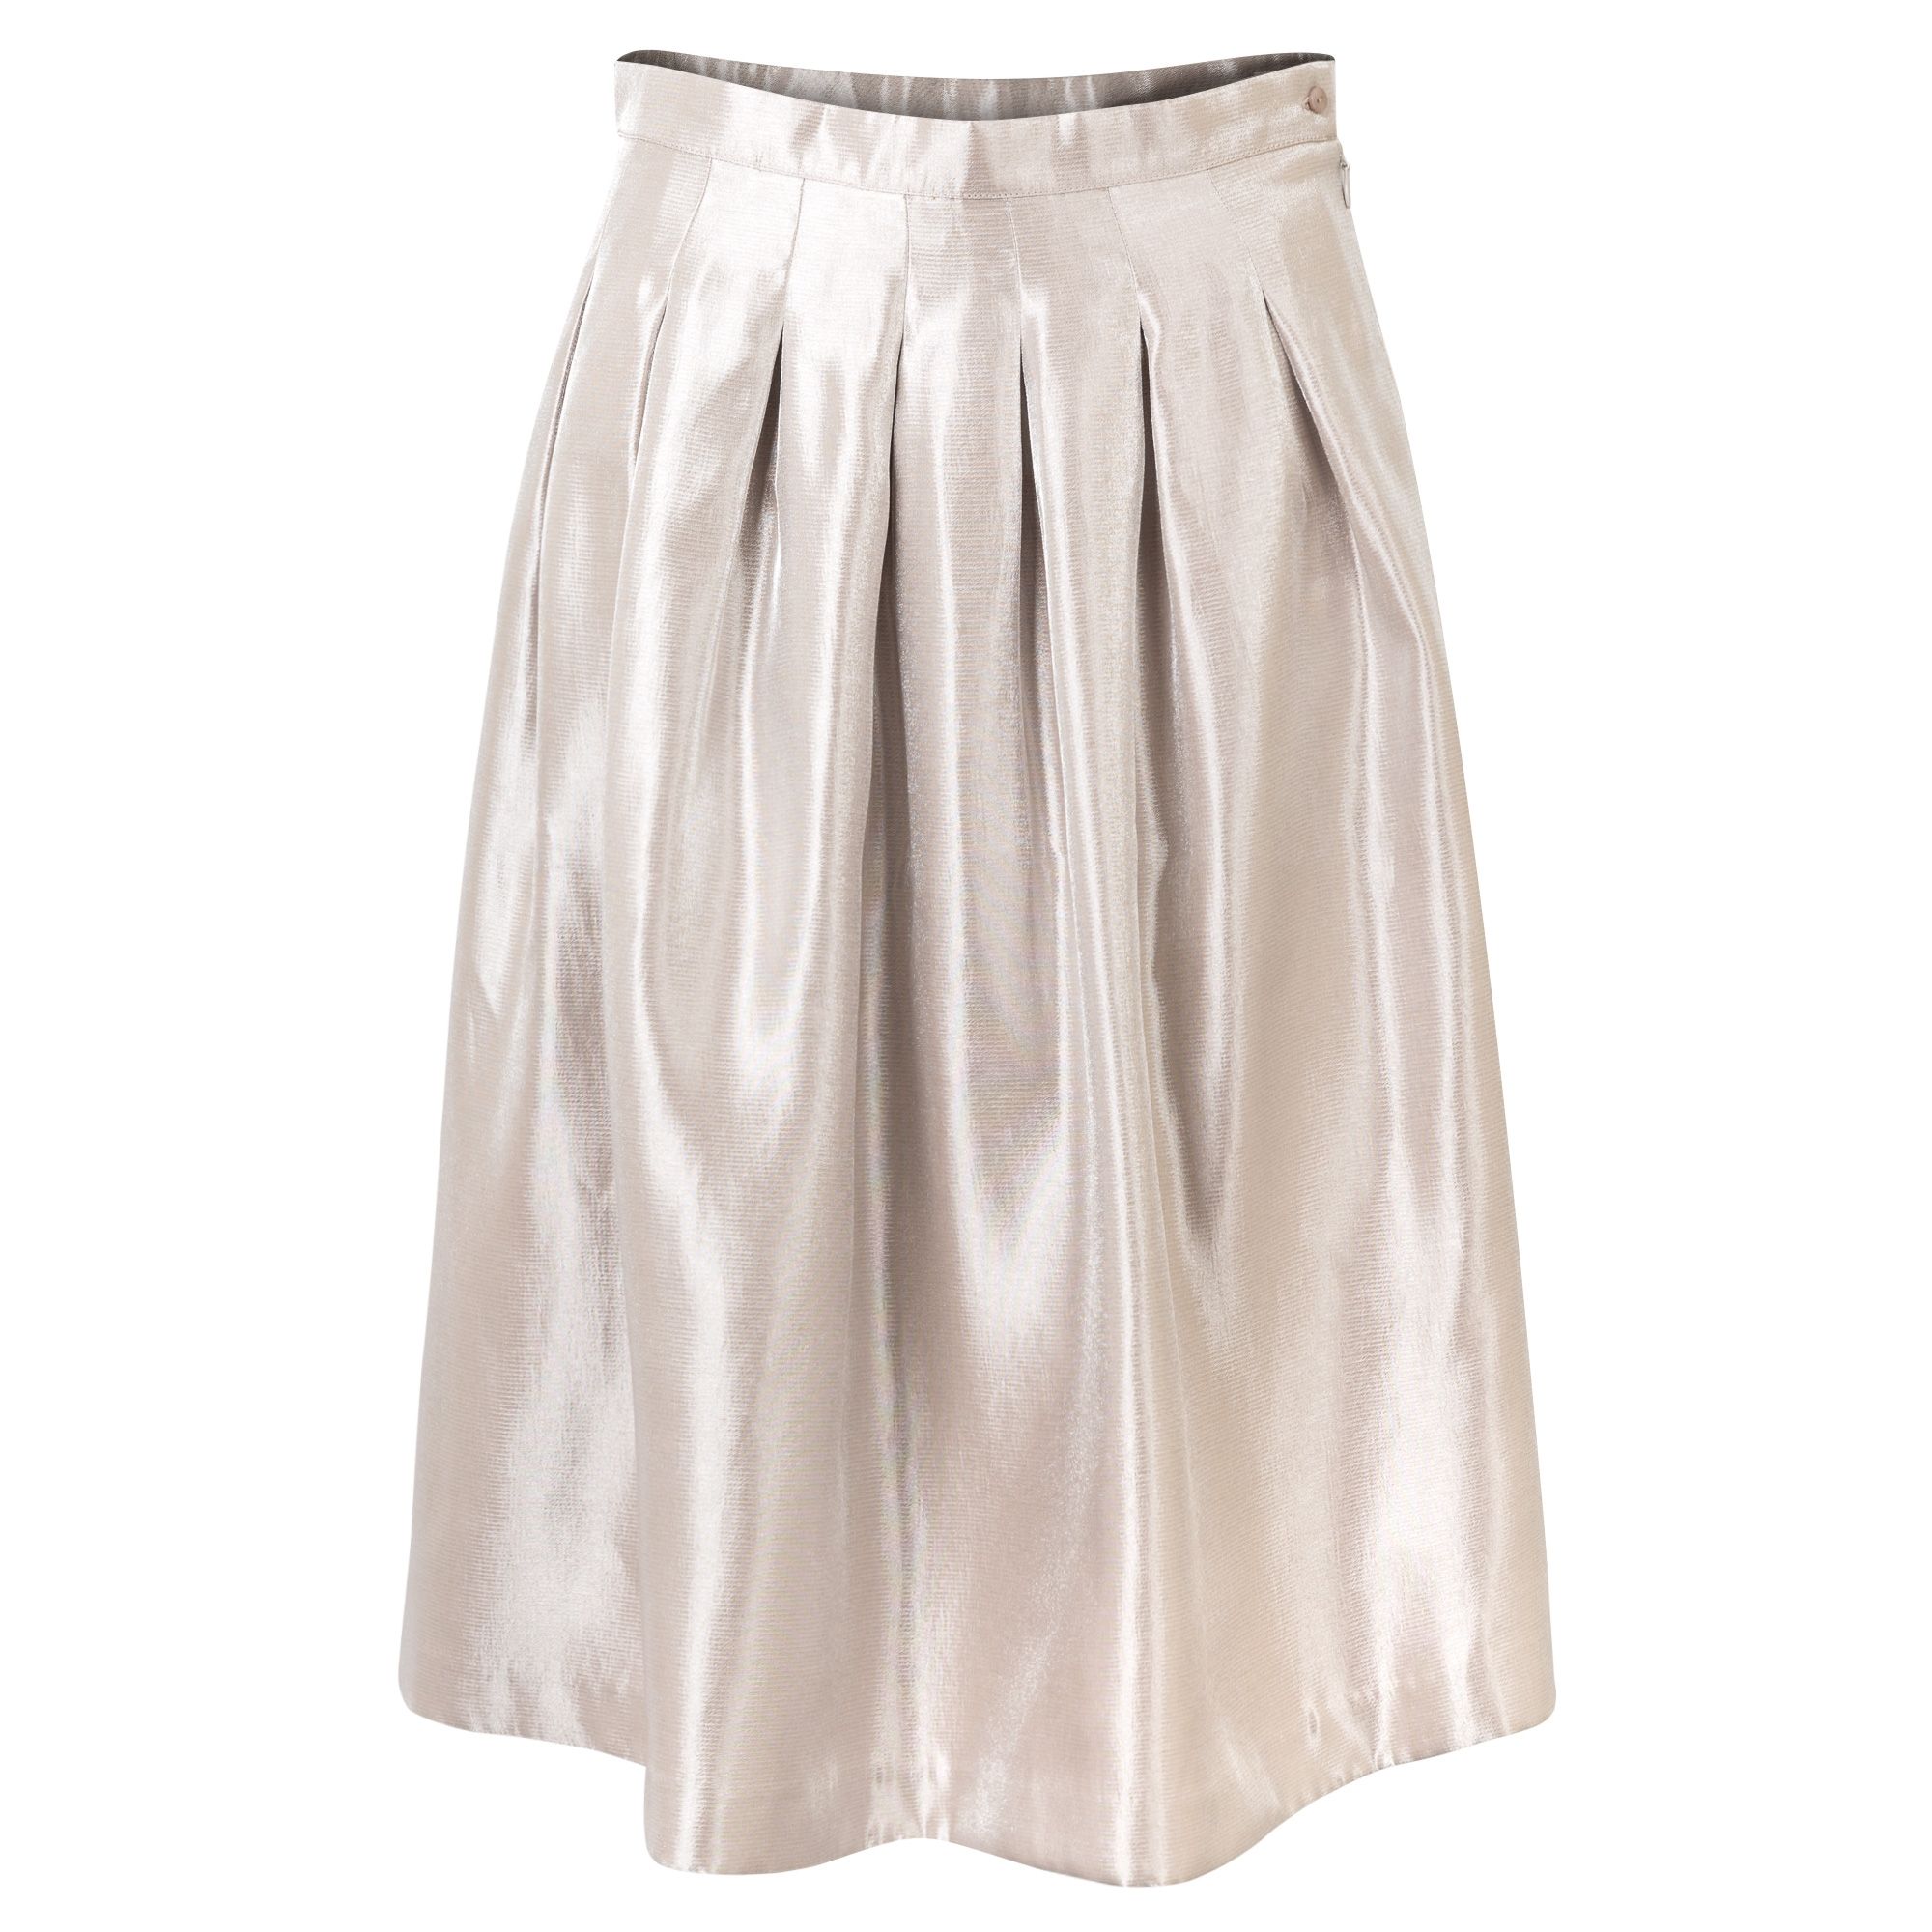 Reflex Metallic Pleated Skirt | Oliver Bonas